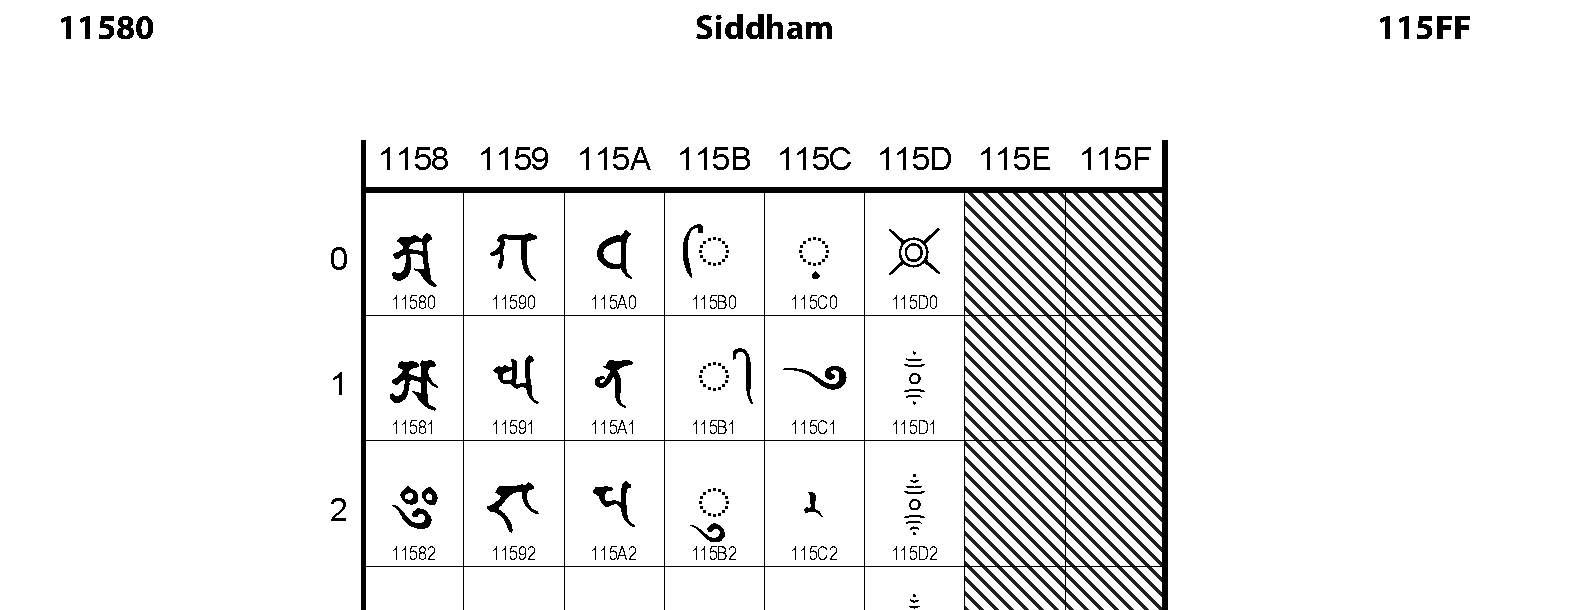 Unicode - Siddham